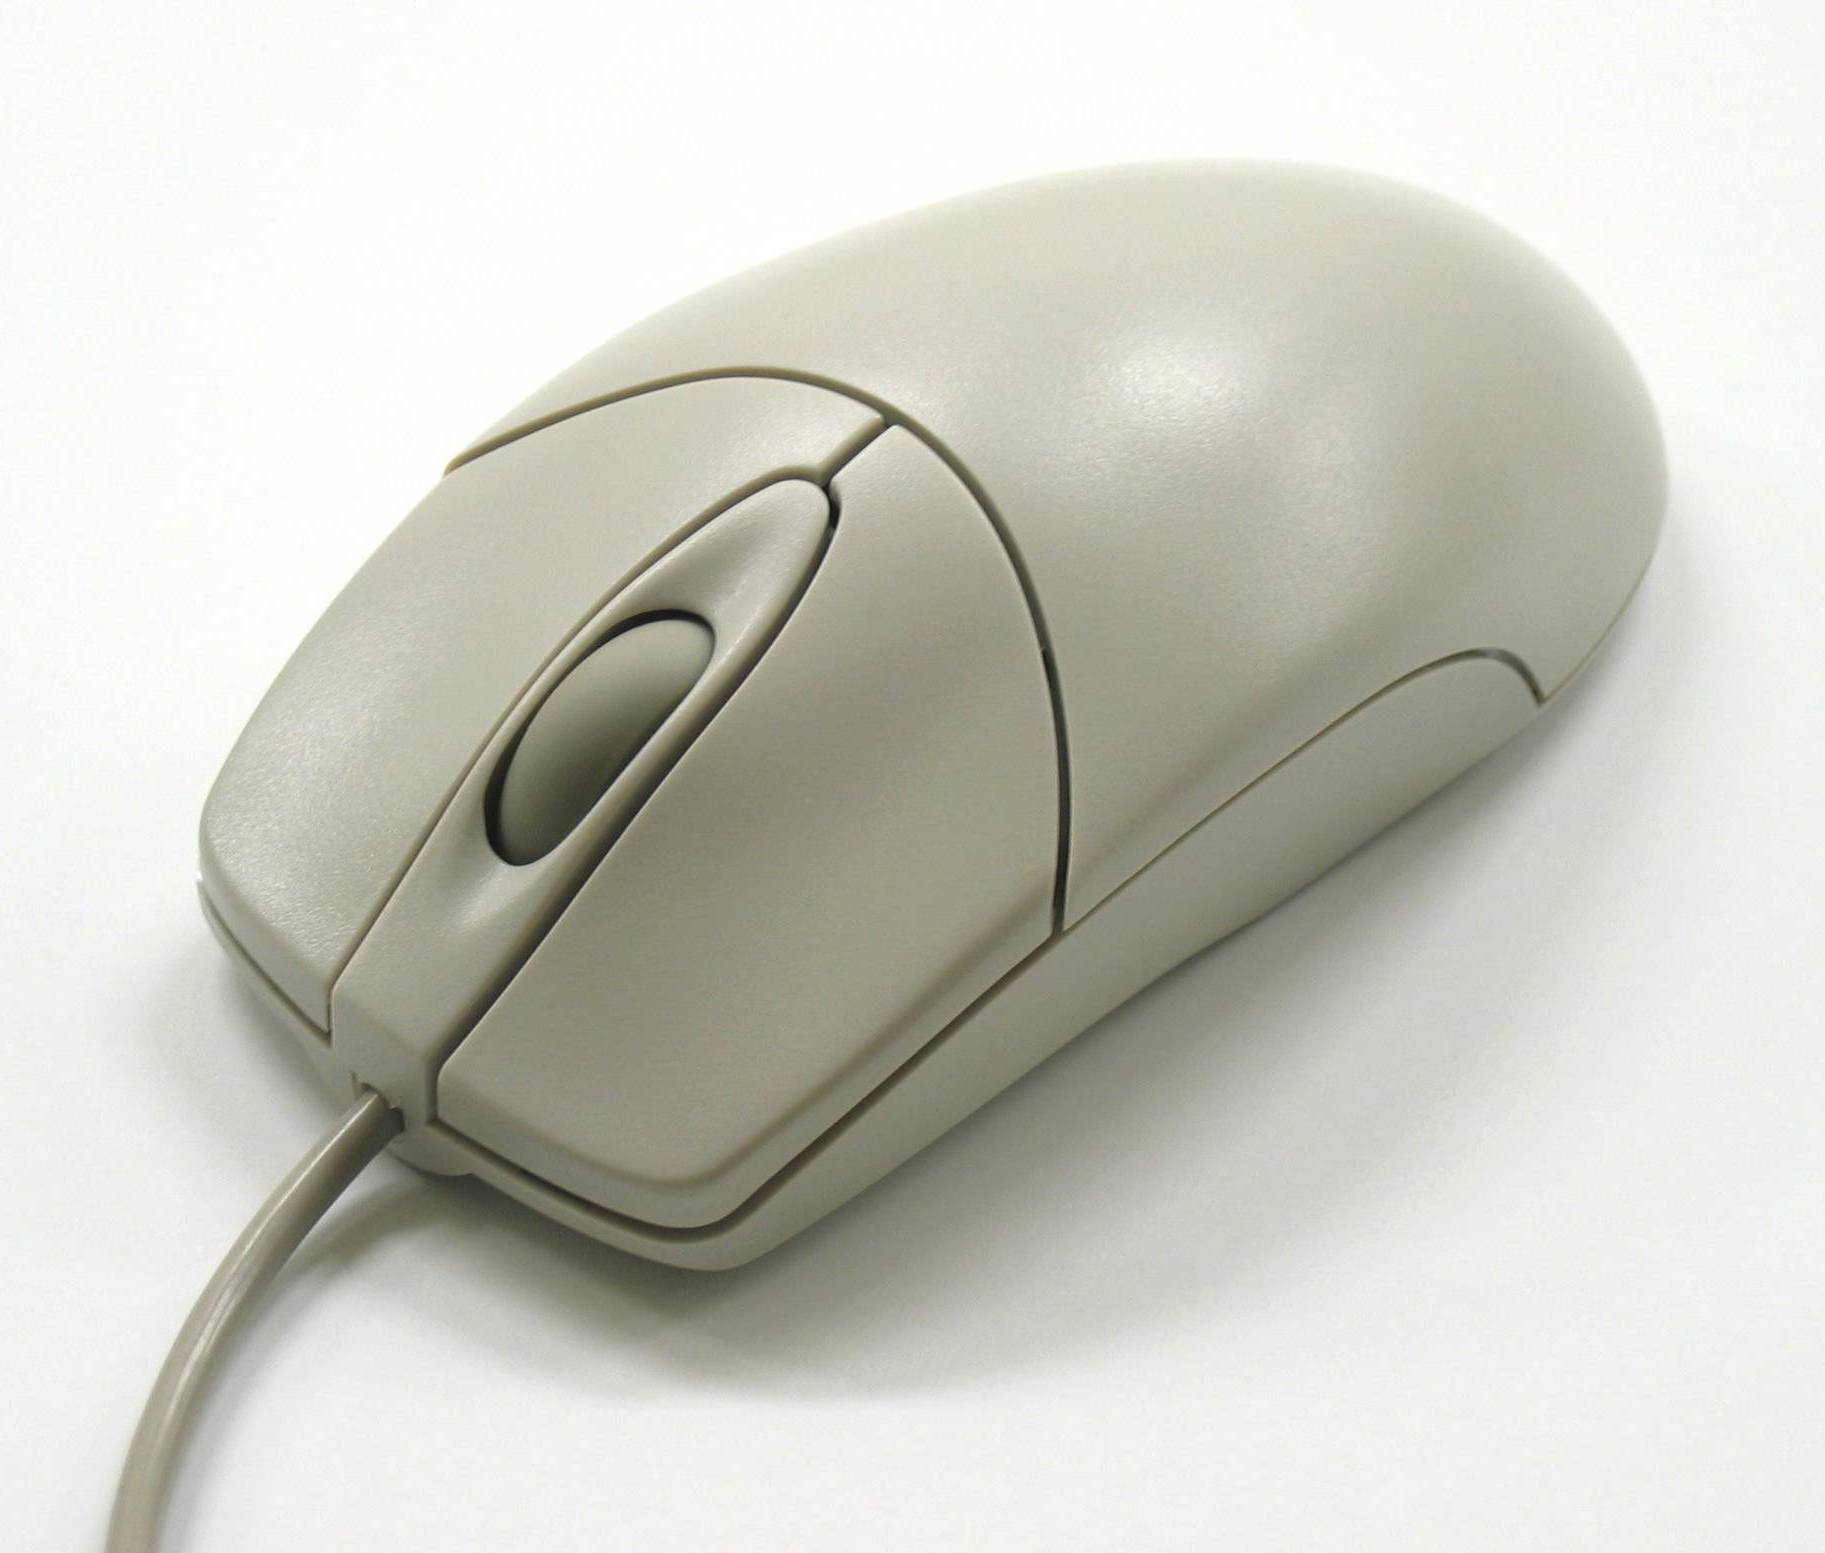 El Computer Mouse, un ratón que es toda una computadora funcional